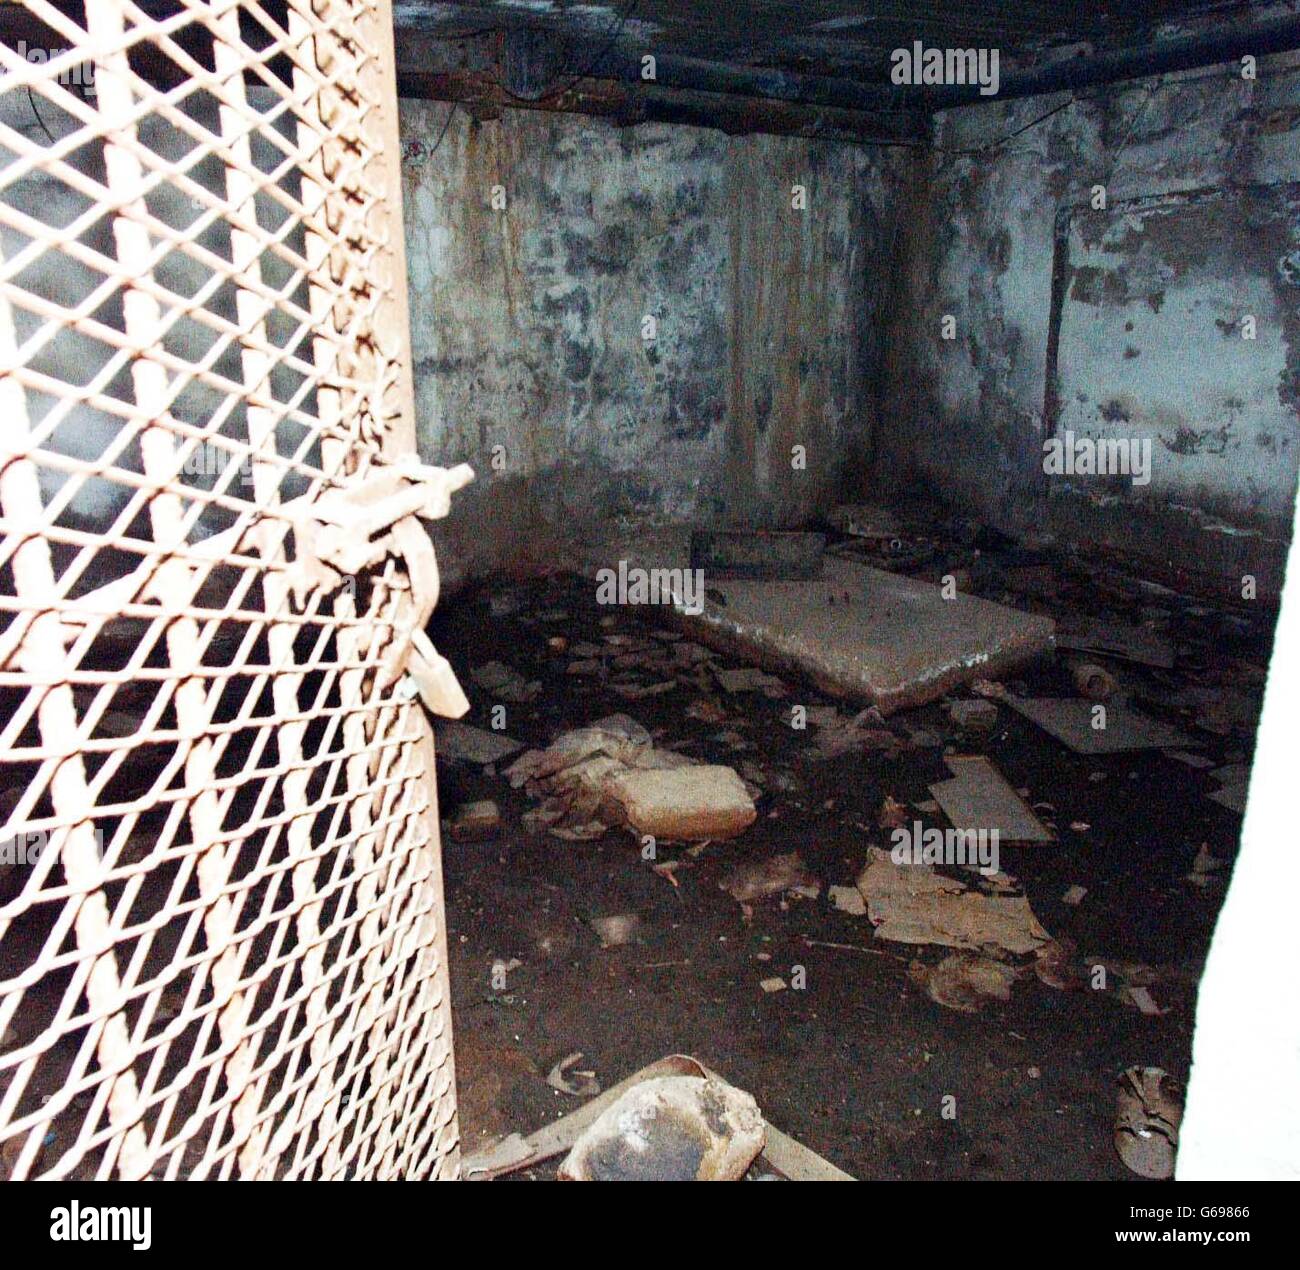 Iraq War torture chamber. Stock Photo